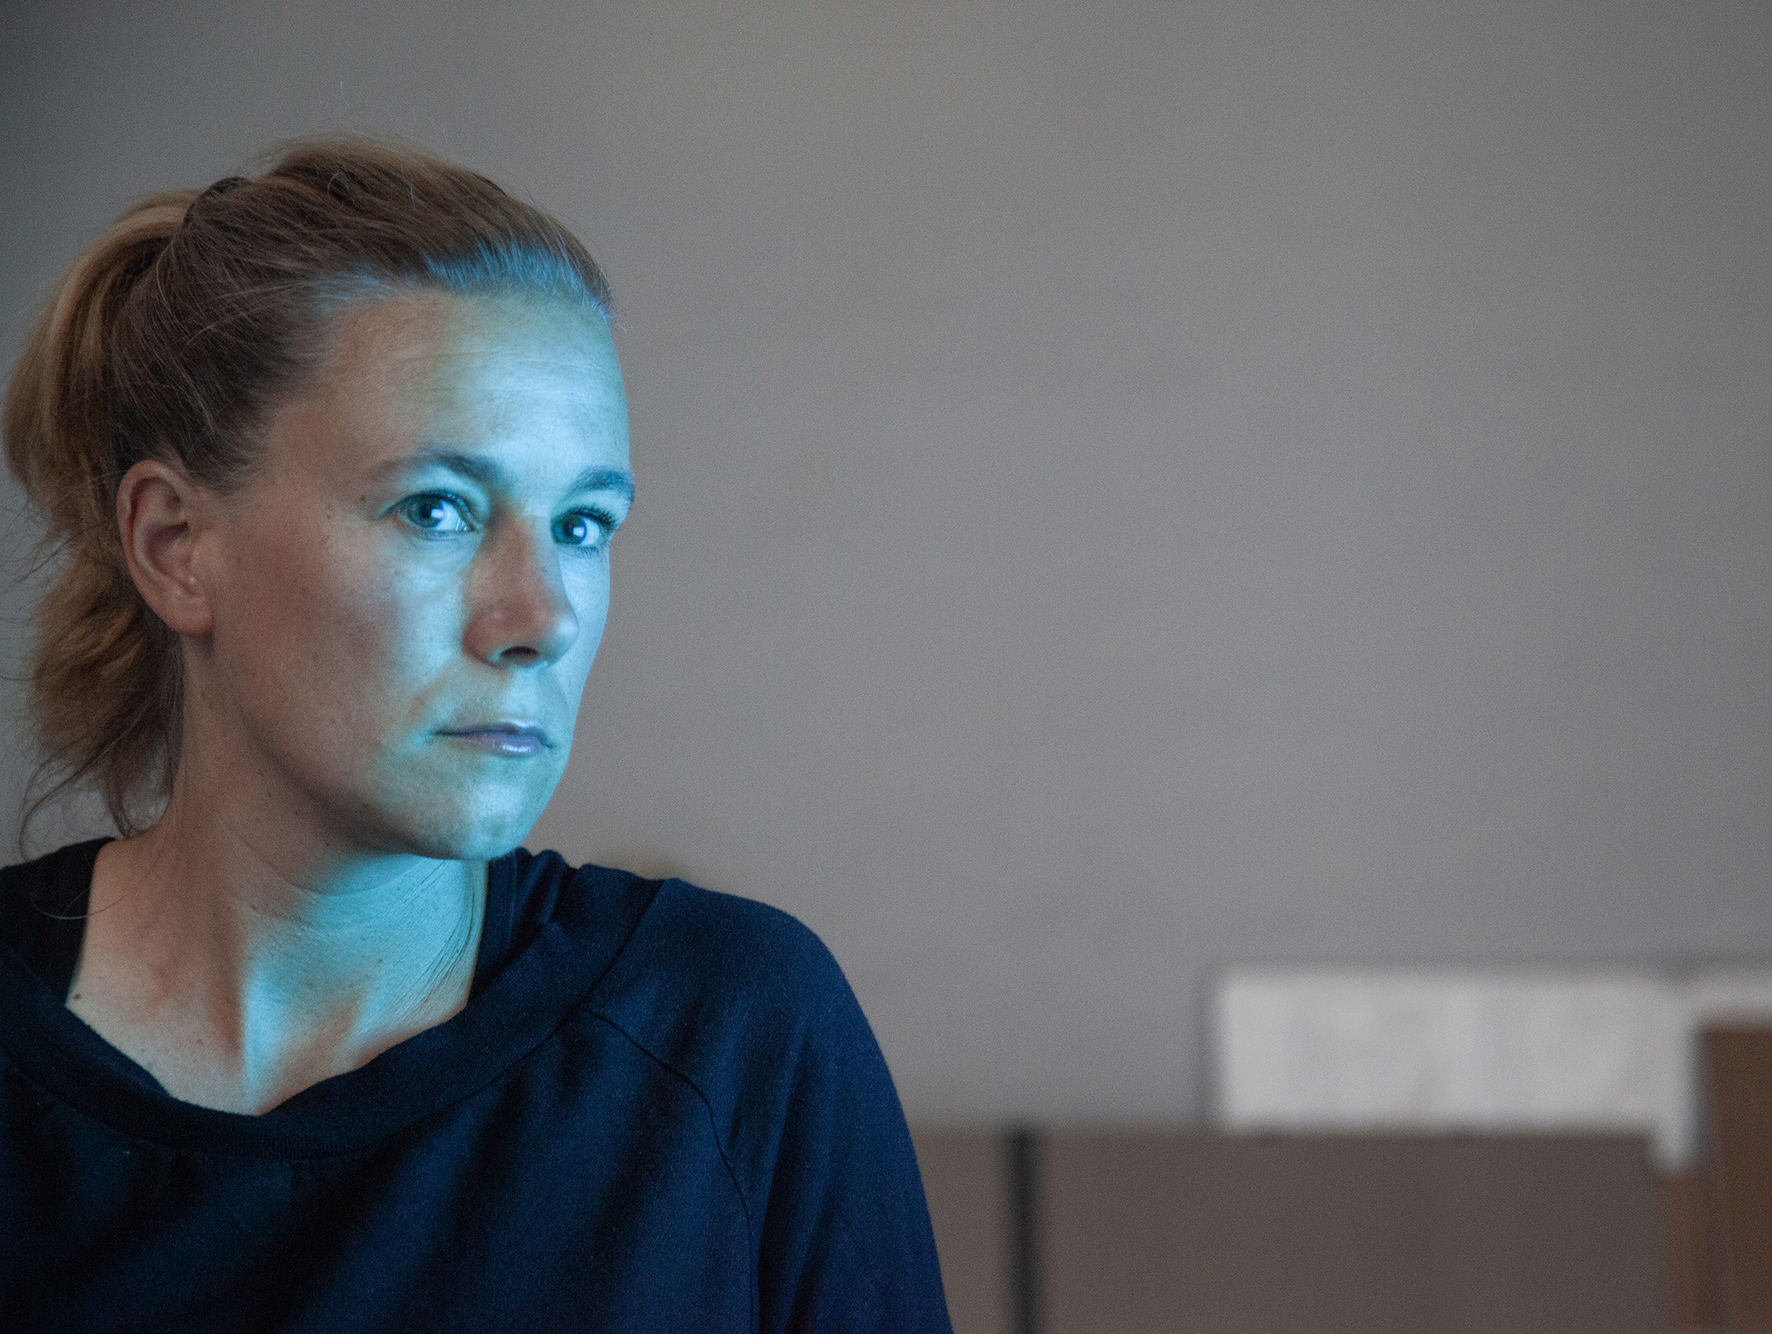 Porträtfoto von Janne Höltermann. Die Künstlerin ist im Halbprofil zu sehen uns ihr Gesicht wird von einem blauen Licht erleuchtet.